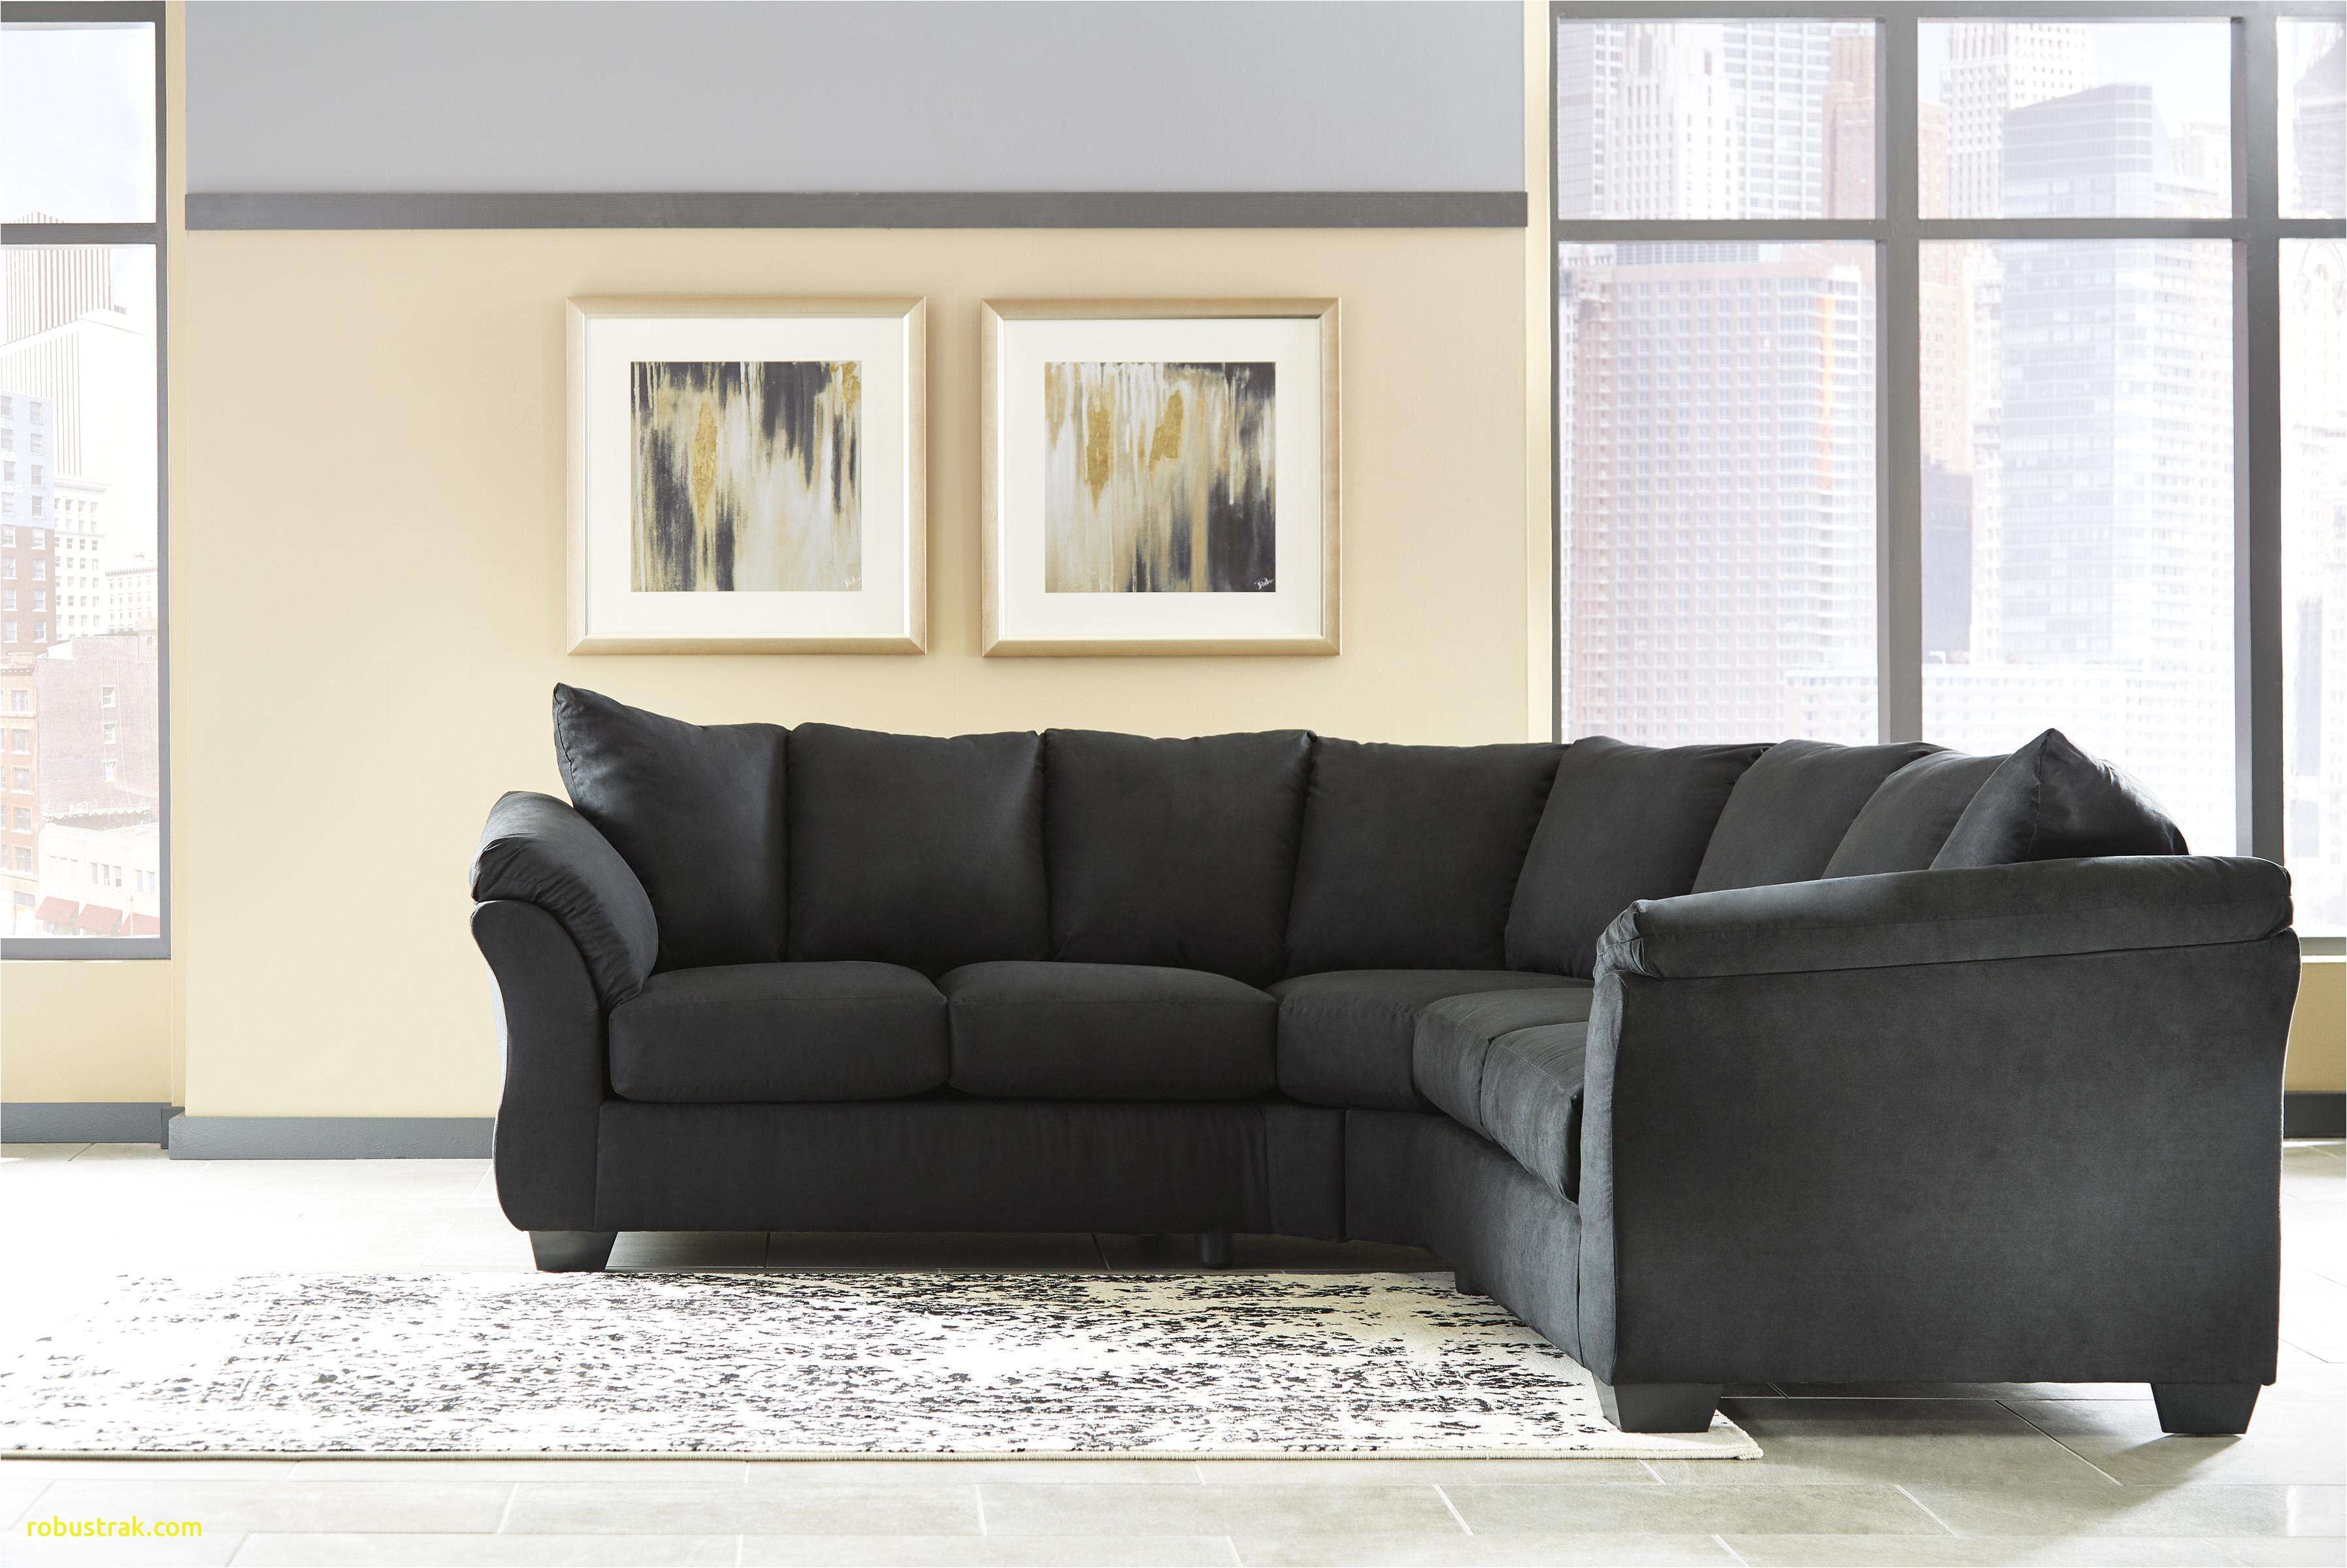 blue leather living room furniture inspirational 30 amazing white living room furniture sets design bakken design